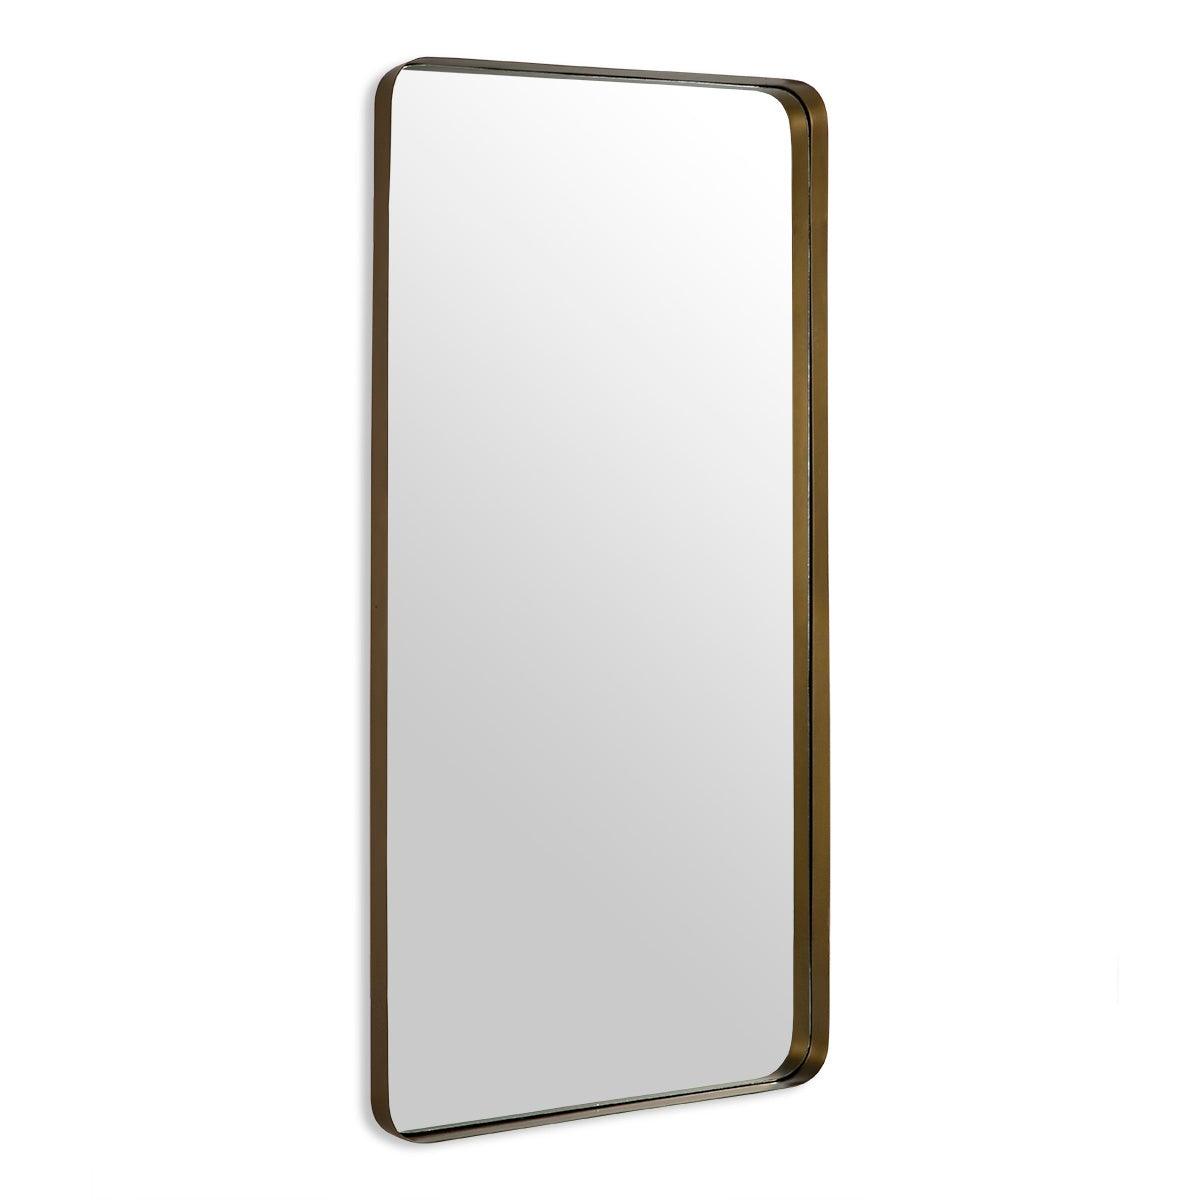 Rectangular Gold Metal Mirror